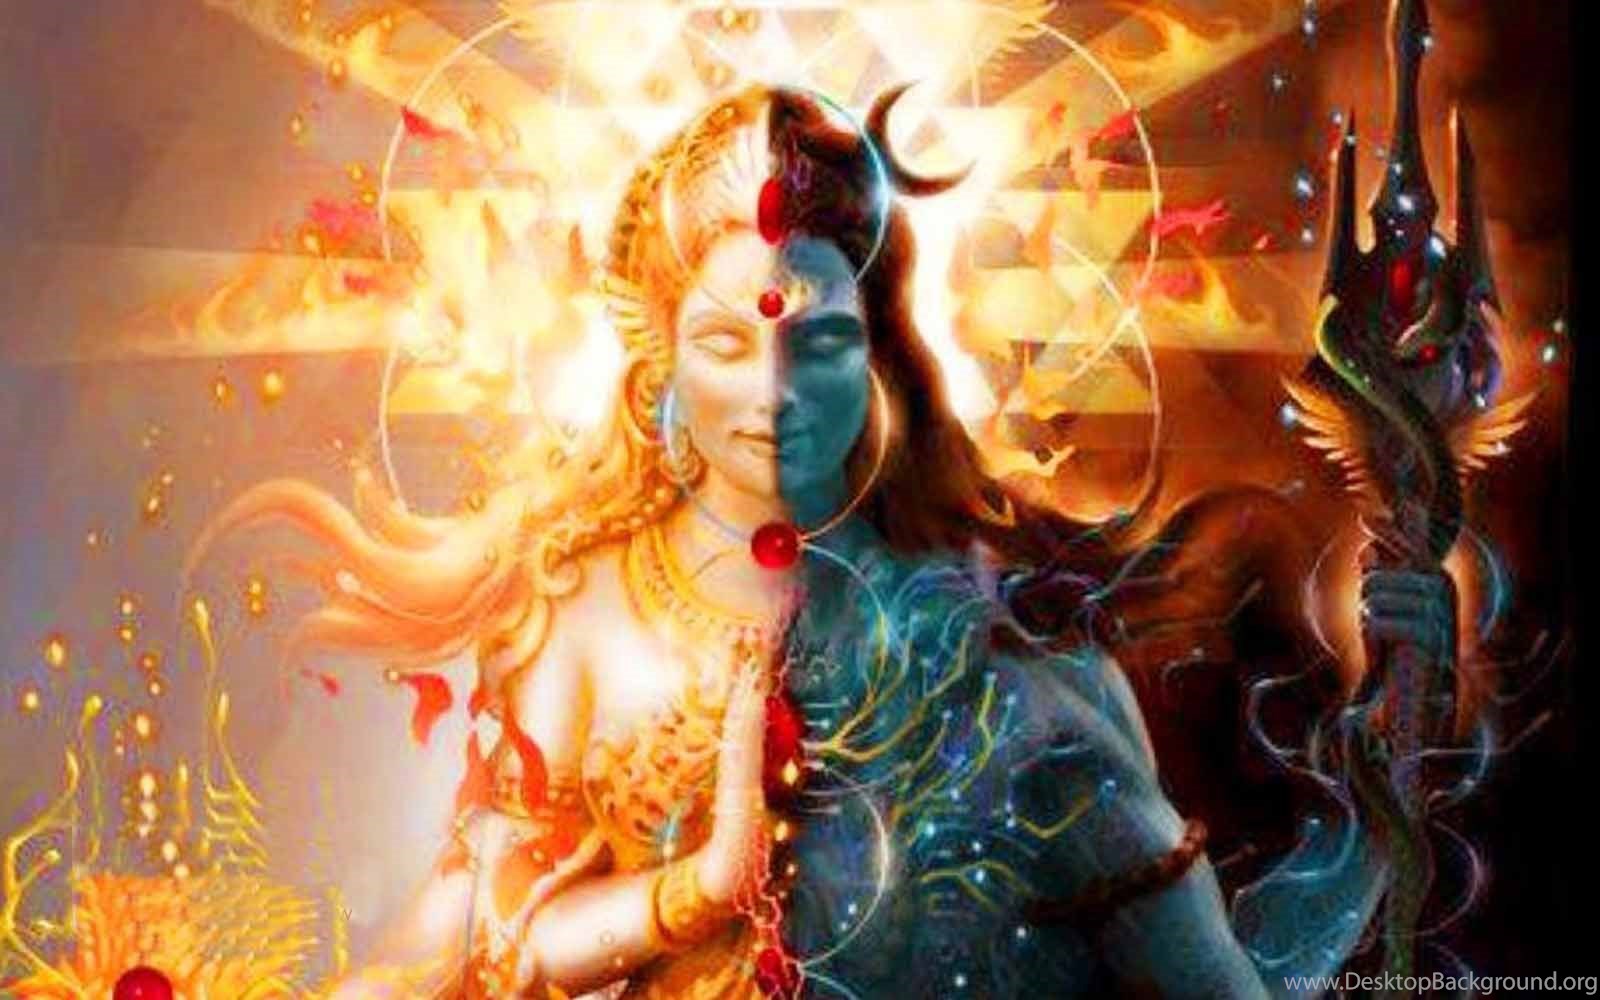 Lord Shiva Parvati Full Hd Wallpapers - Full Hd Shiv And Parvati -  1600x1000 Wallpaper 